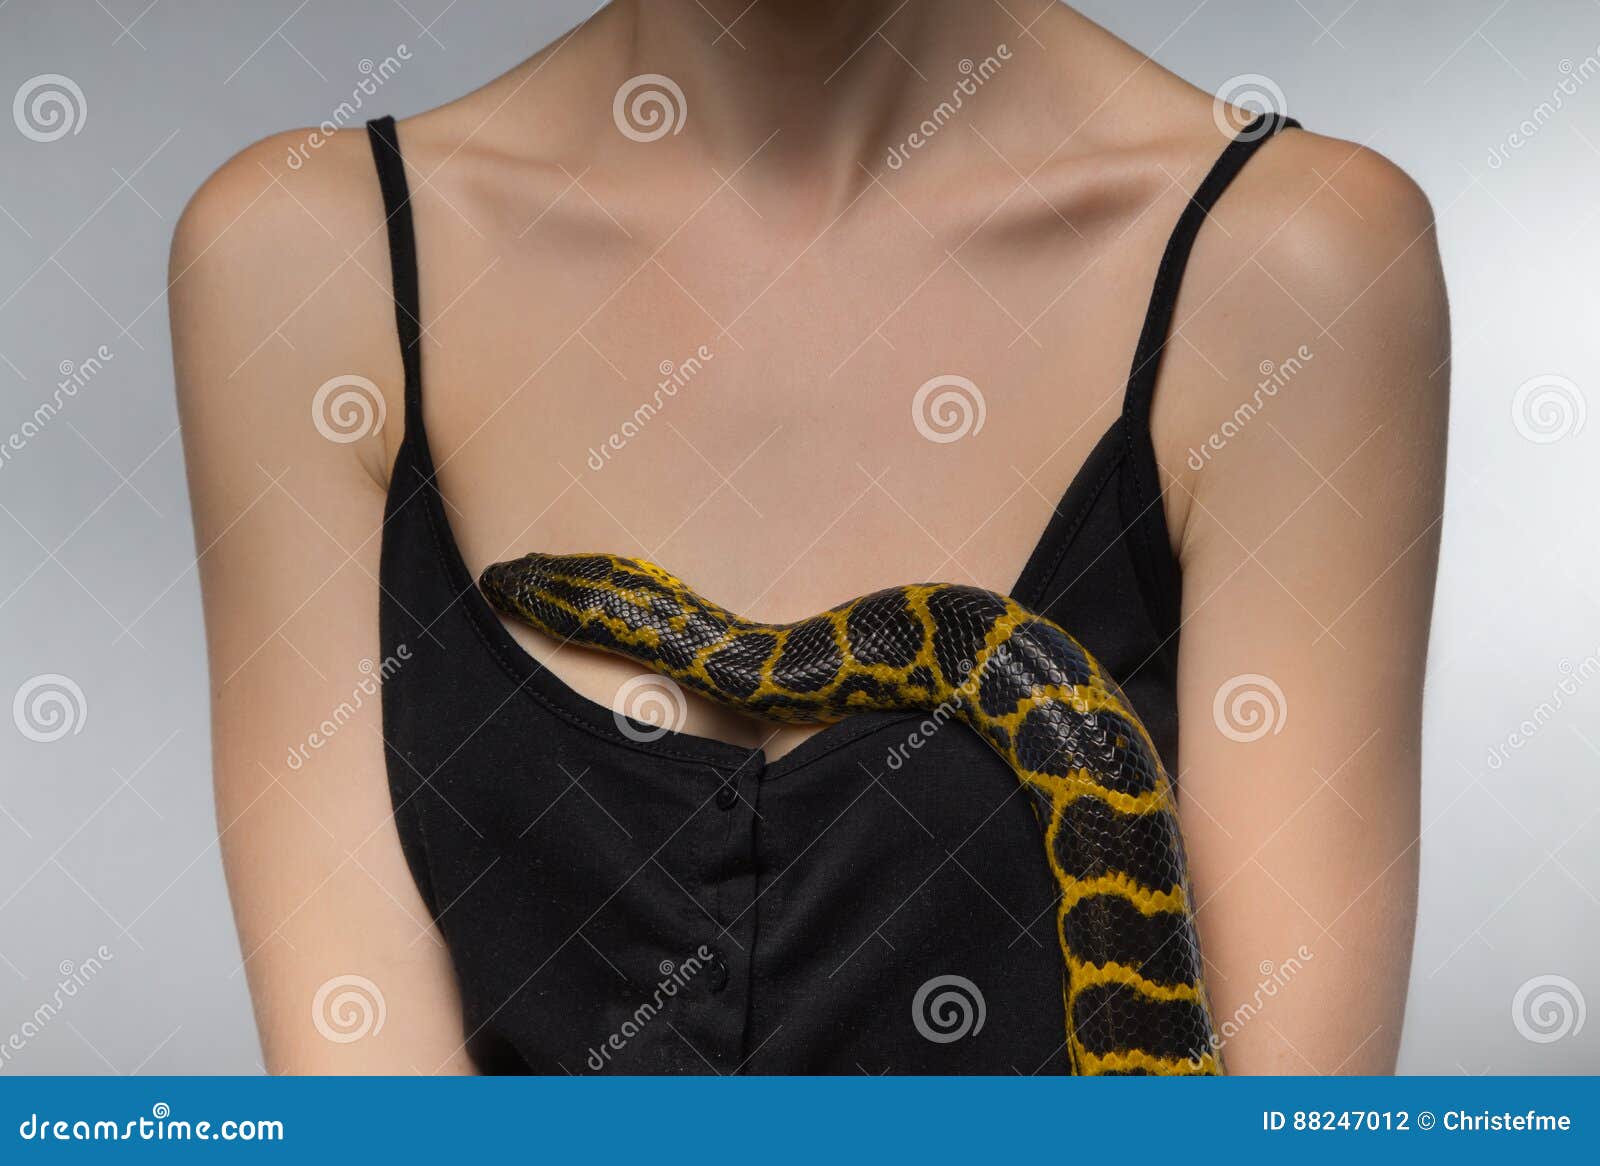 картинки змея пригретая на груди (120) фото